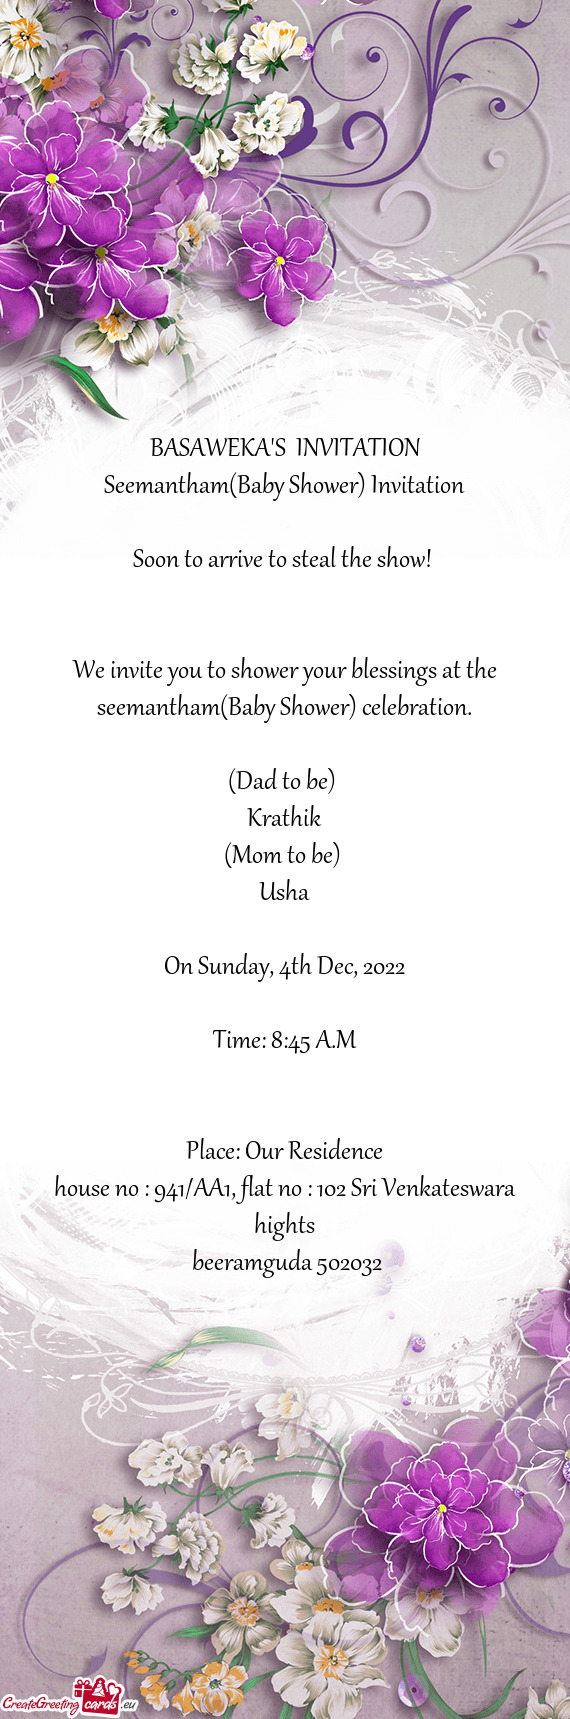 BASAWEKA'S INVITATION